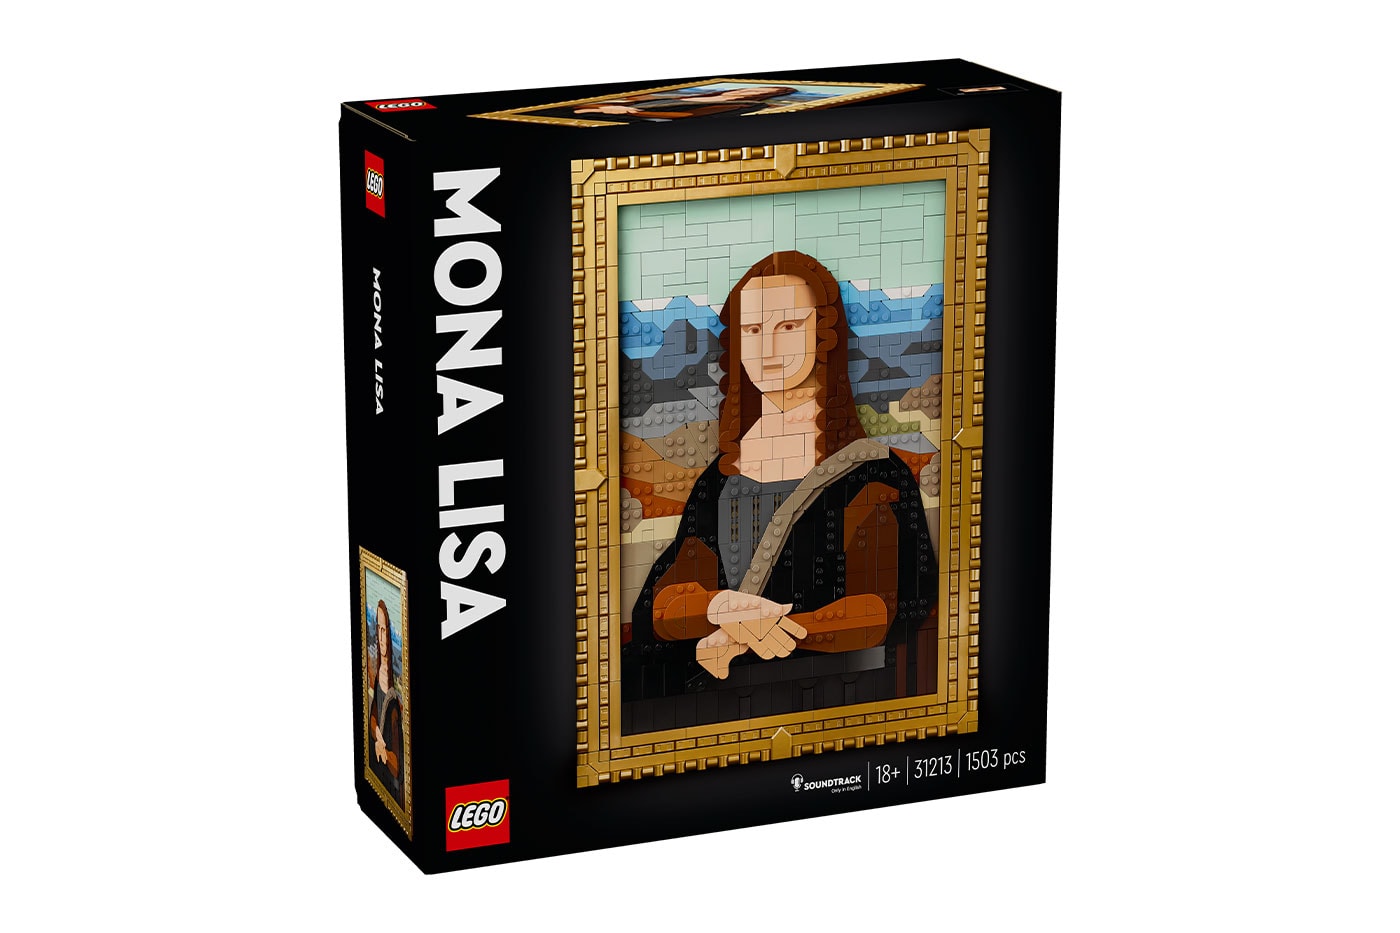 LEGO Paris Mona Lisa Notre-Dame Set 31213 21061 Release Info